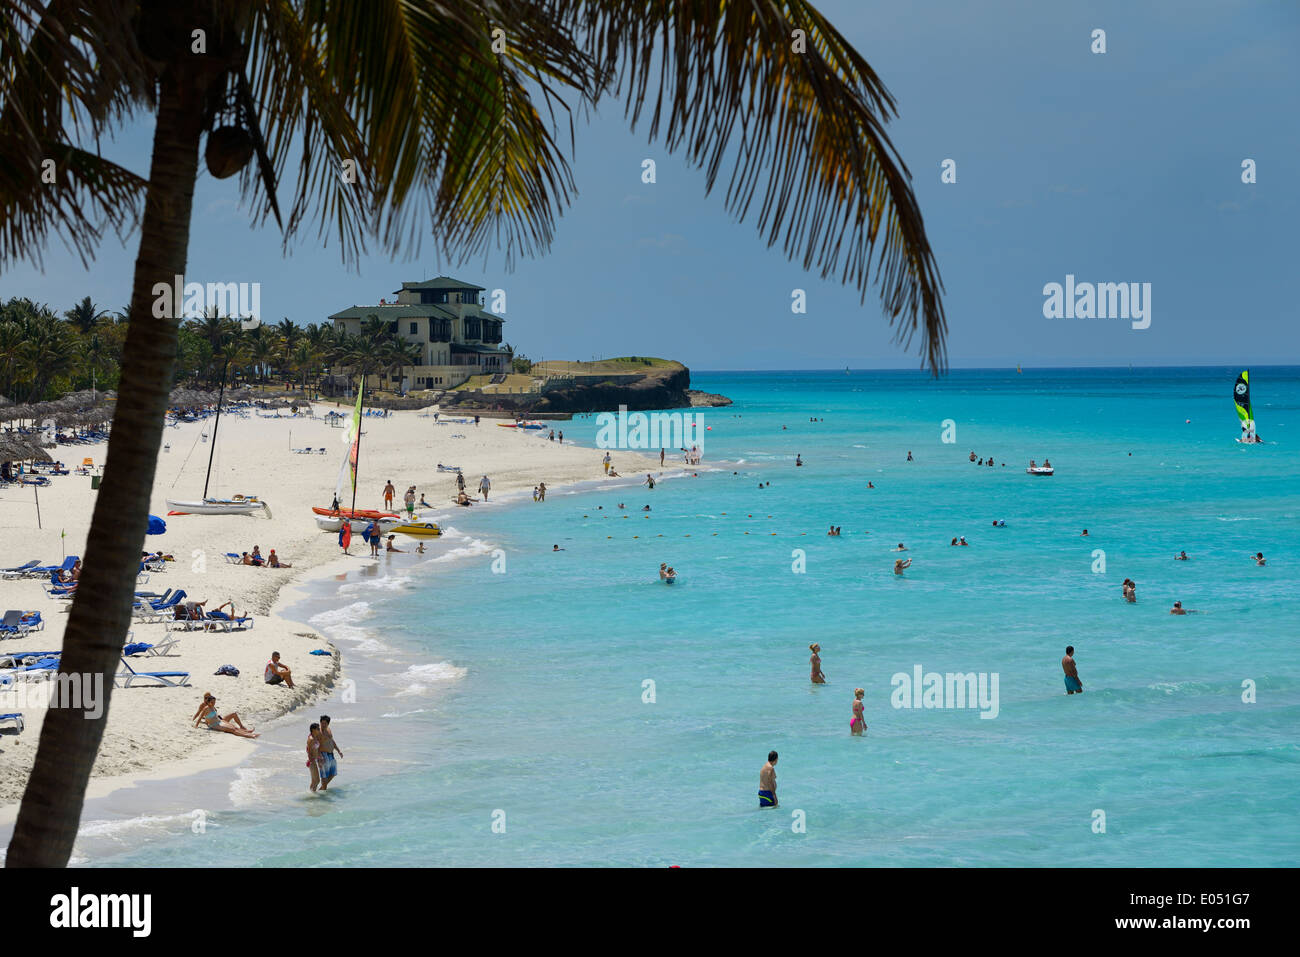 Kokospalme und Xanadu Herrenhaus im White sand Strand von Varadero Resort Kuba mit Touristen im türkisfarbenen Wasser des Atlantischen Ozeans Stockfoto